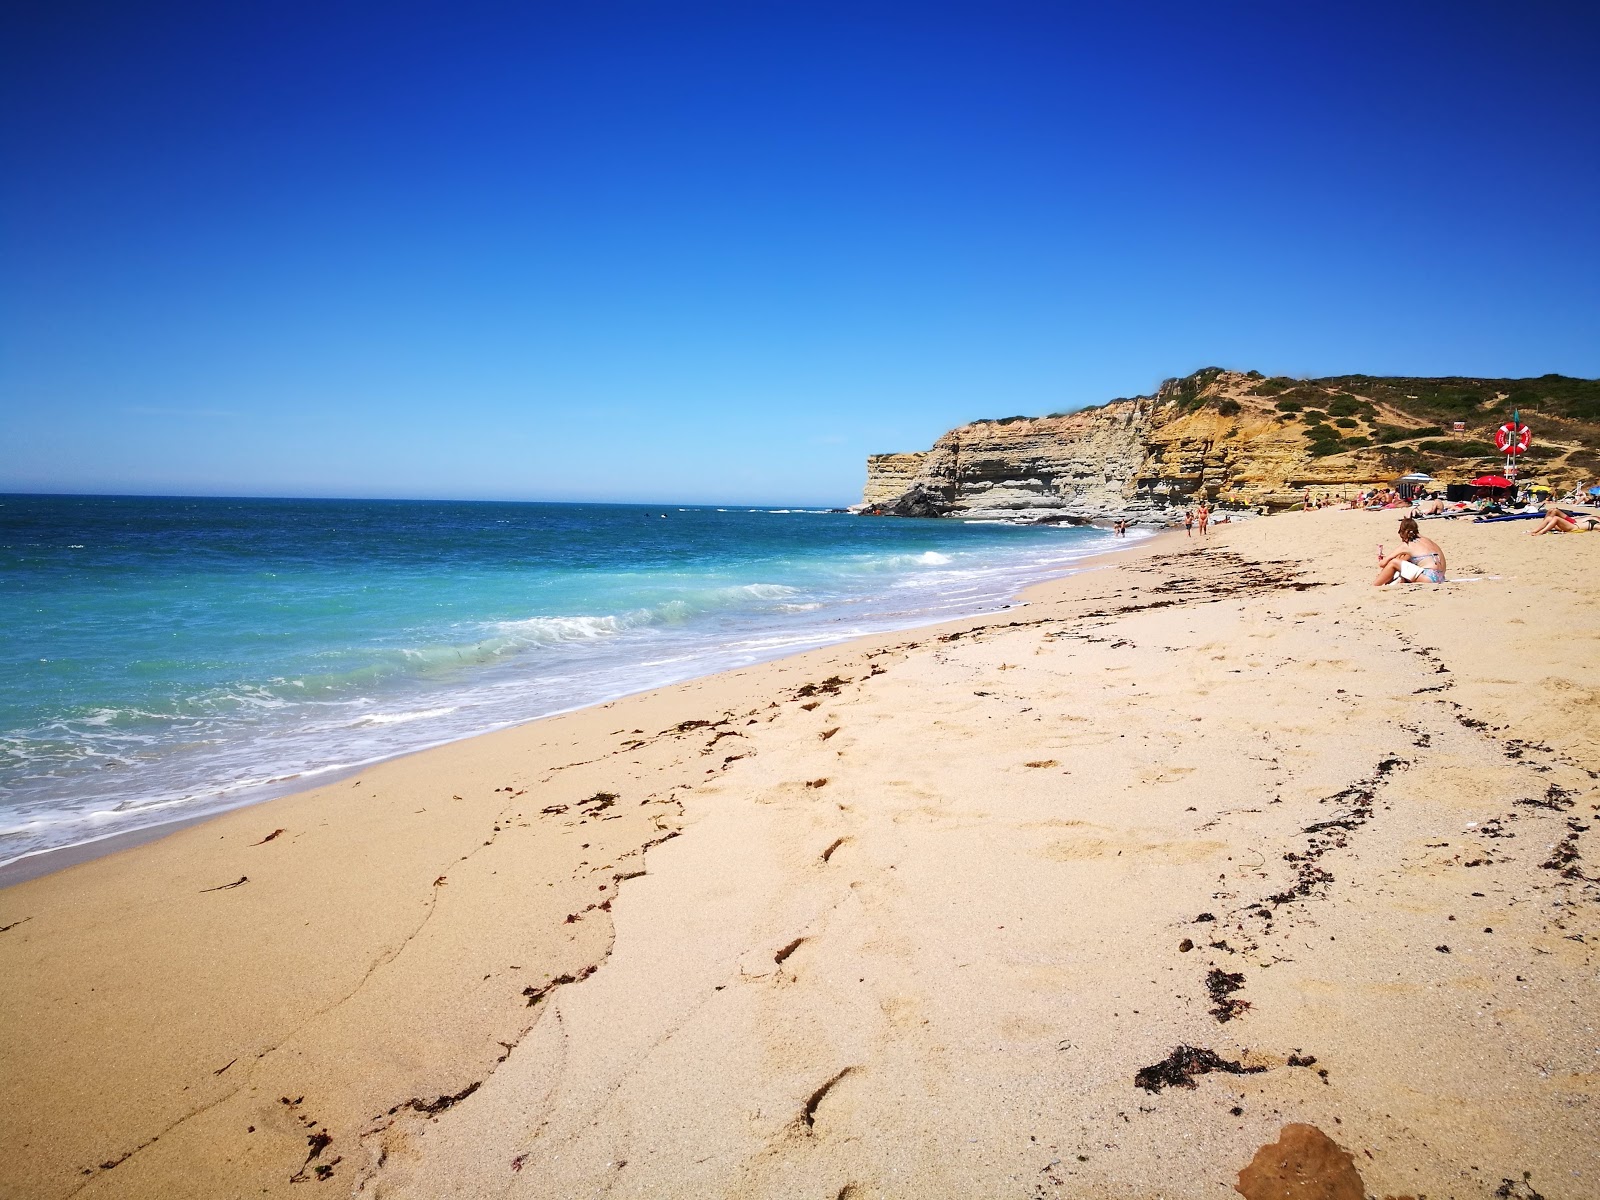 Foto af Praia do Alibaba - populært sted blandt afslapningskendere